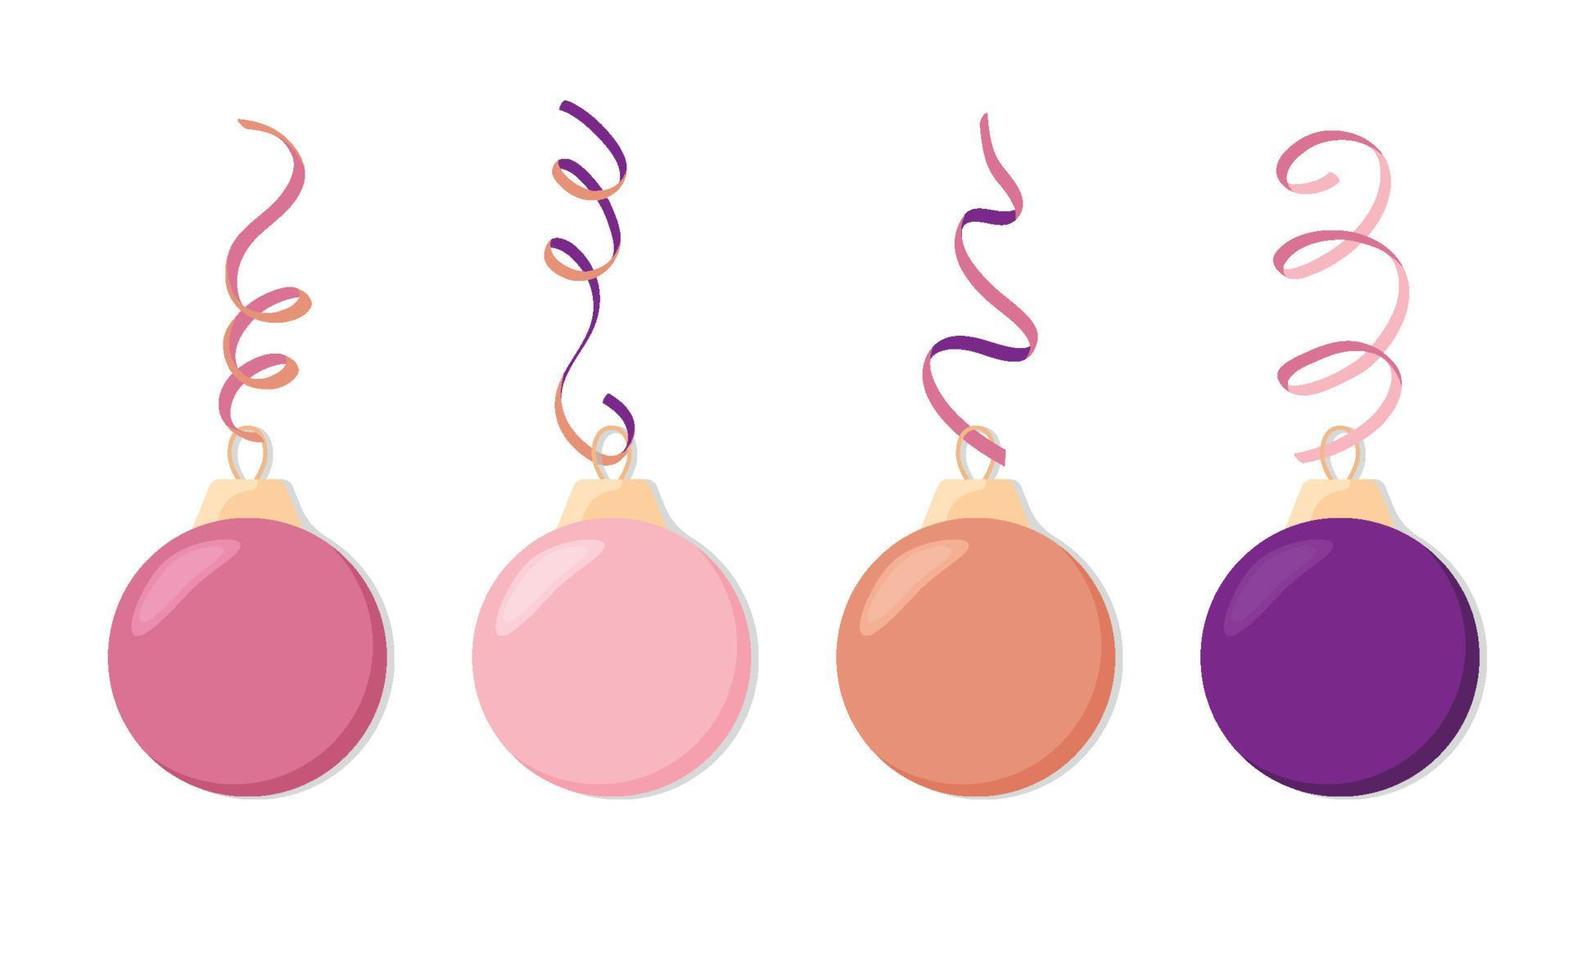 julleksak på ett träd. en uppsättning av glas balls.vektor.illustration vektor